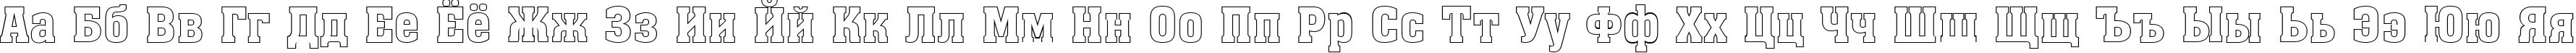 Пример написания русского алфавита шрифтом a_AssuanOtl